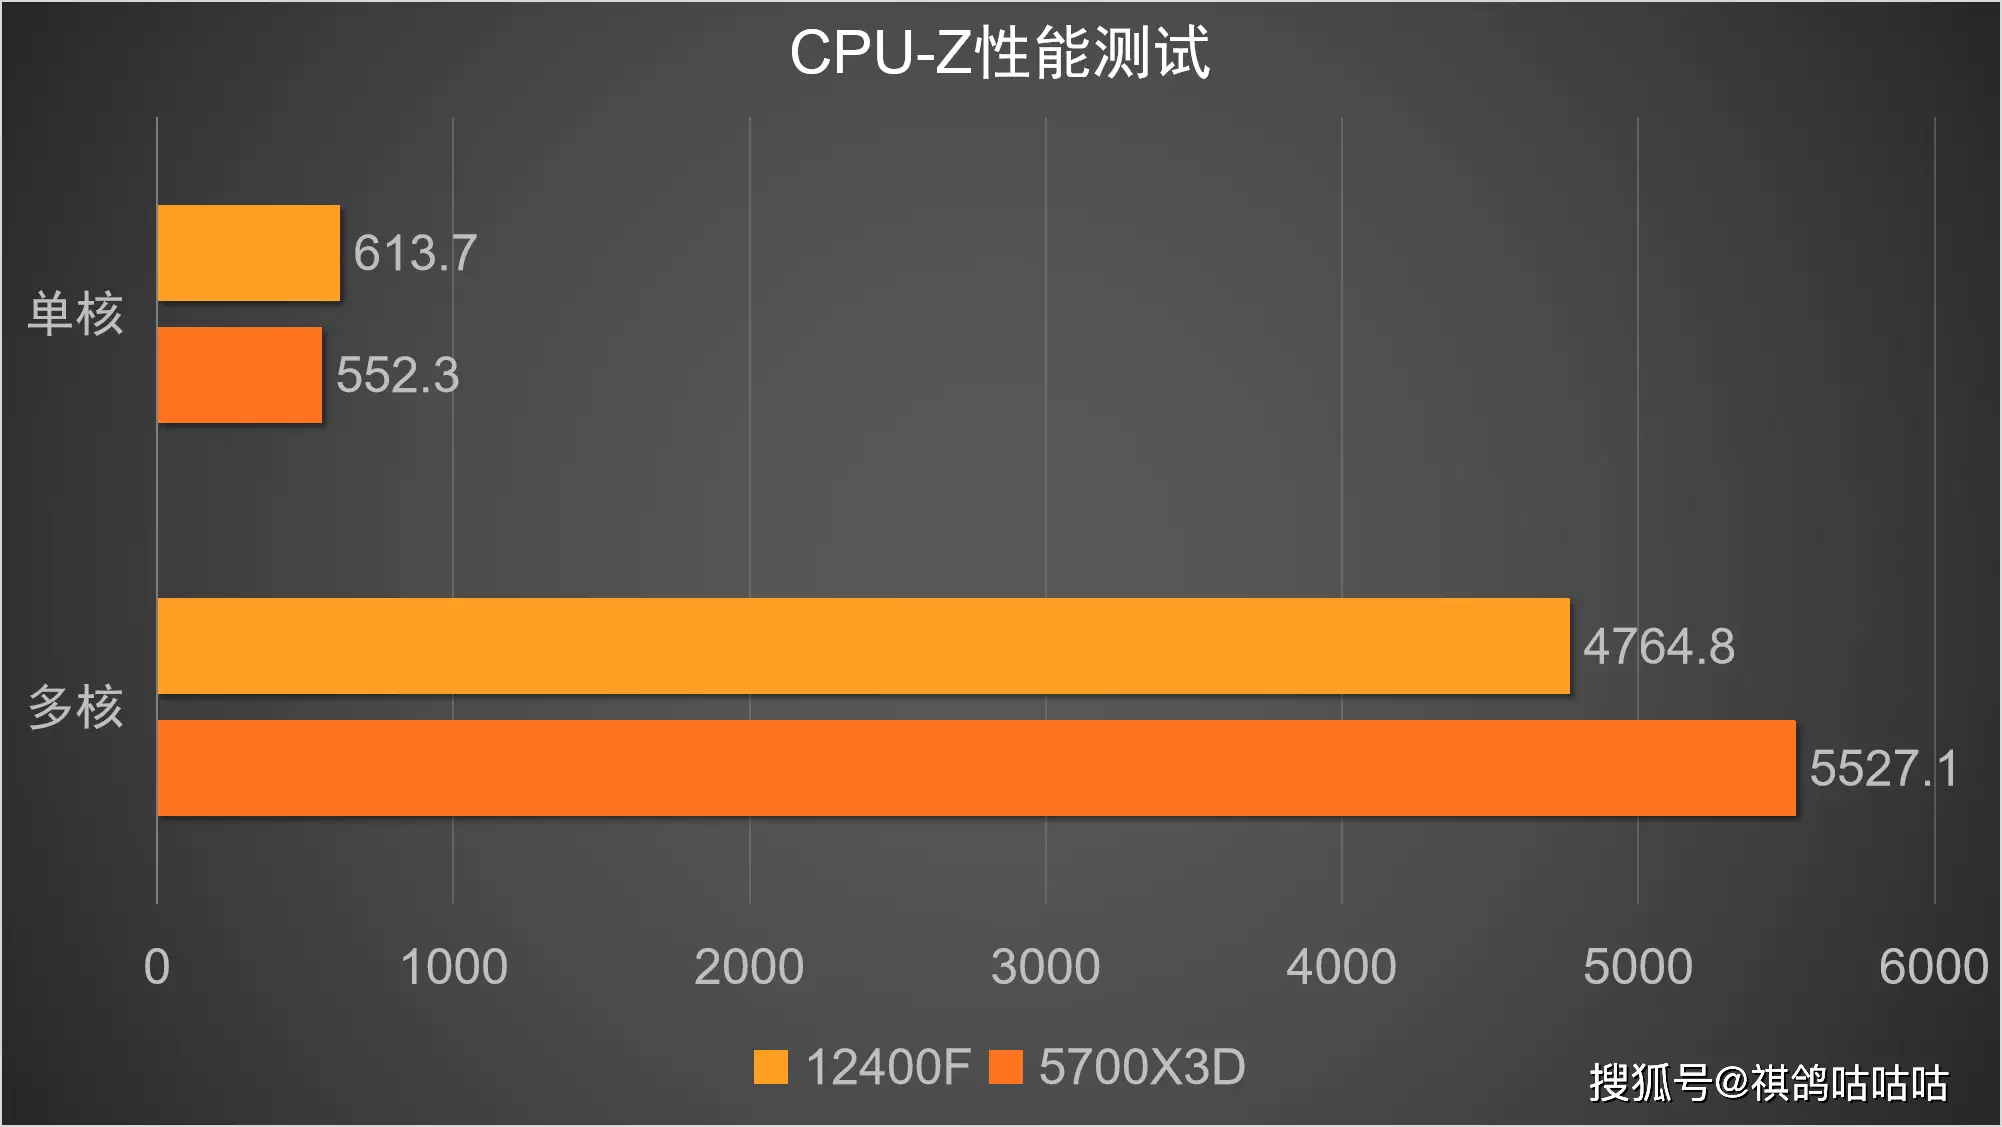 华硕主板 12 代搭载 DDR4 内存，硬件提升与技术探索的升华  第1张